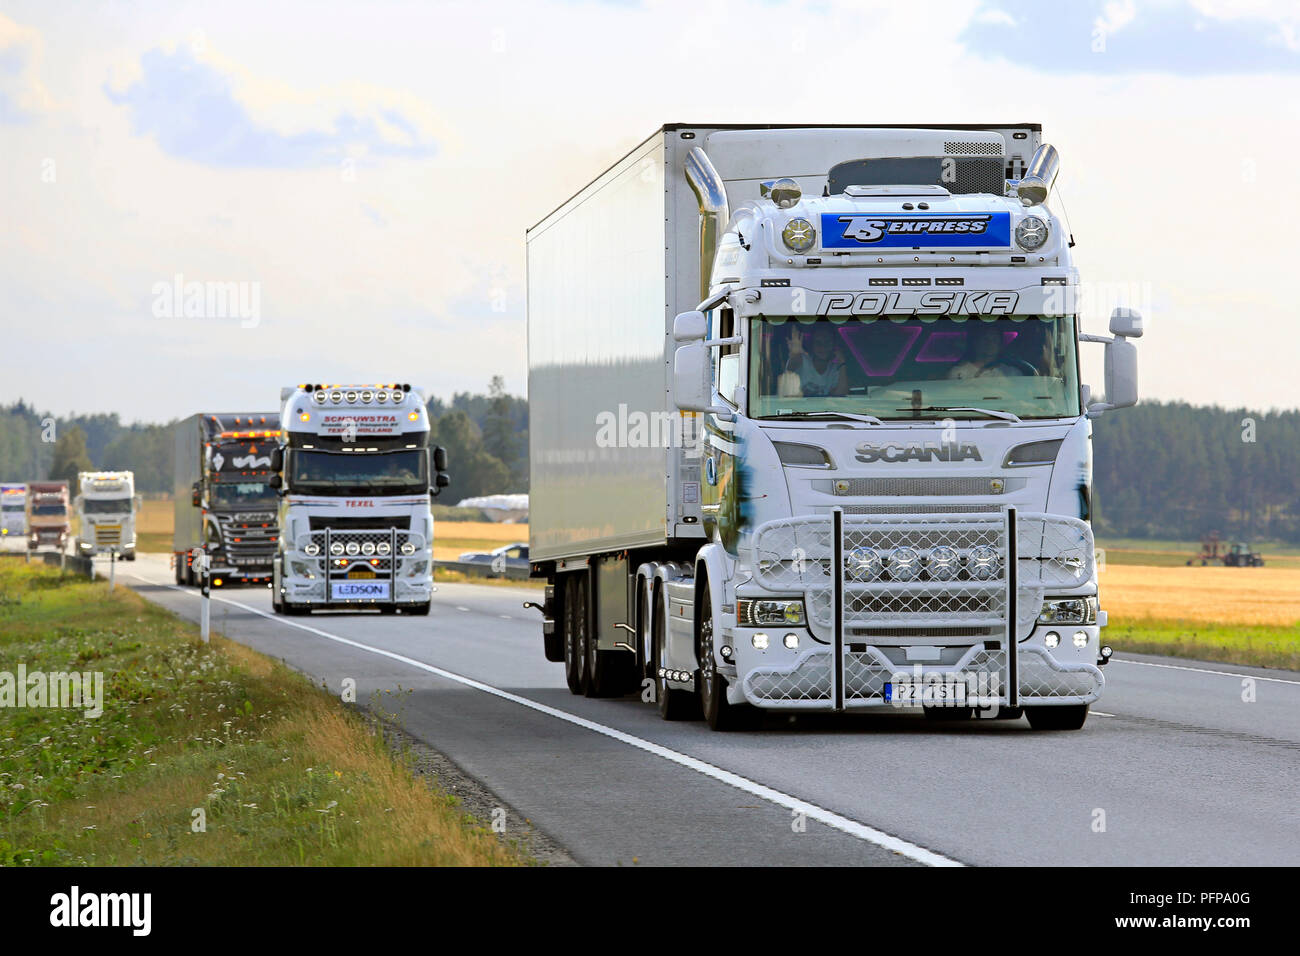 LUOPAJARVI, FINLANDE - 9 août 2018 : blanc semi remorque frigorifique Scania personnalisées de TS Express en convoi de camions au pouvoir Truck Show 2018. Banque D'Images